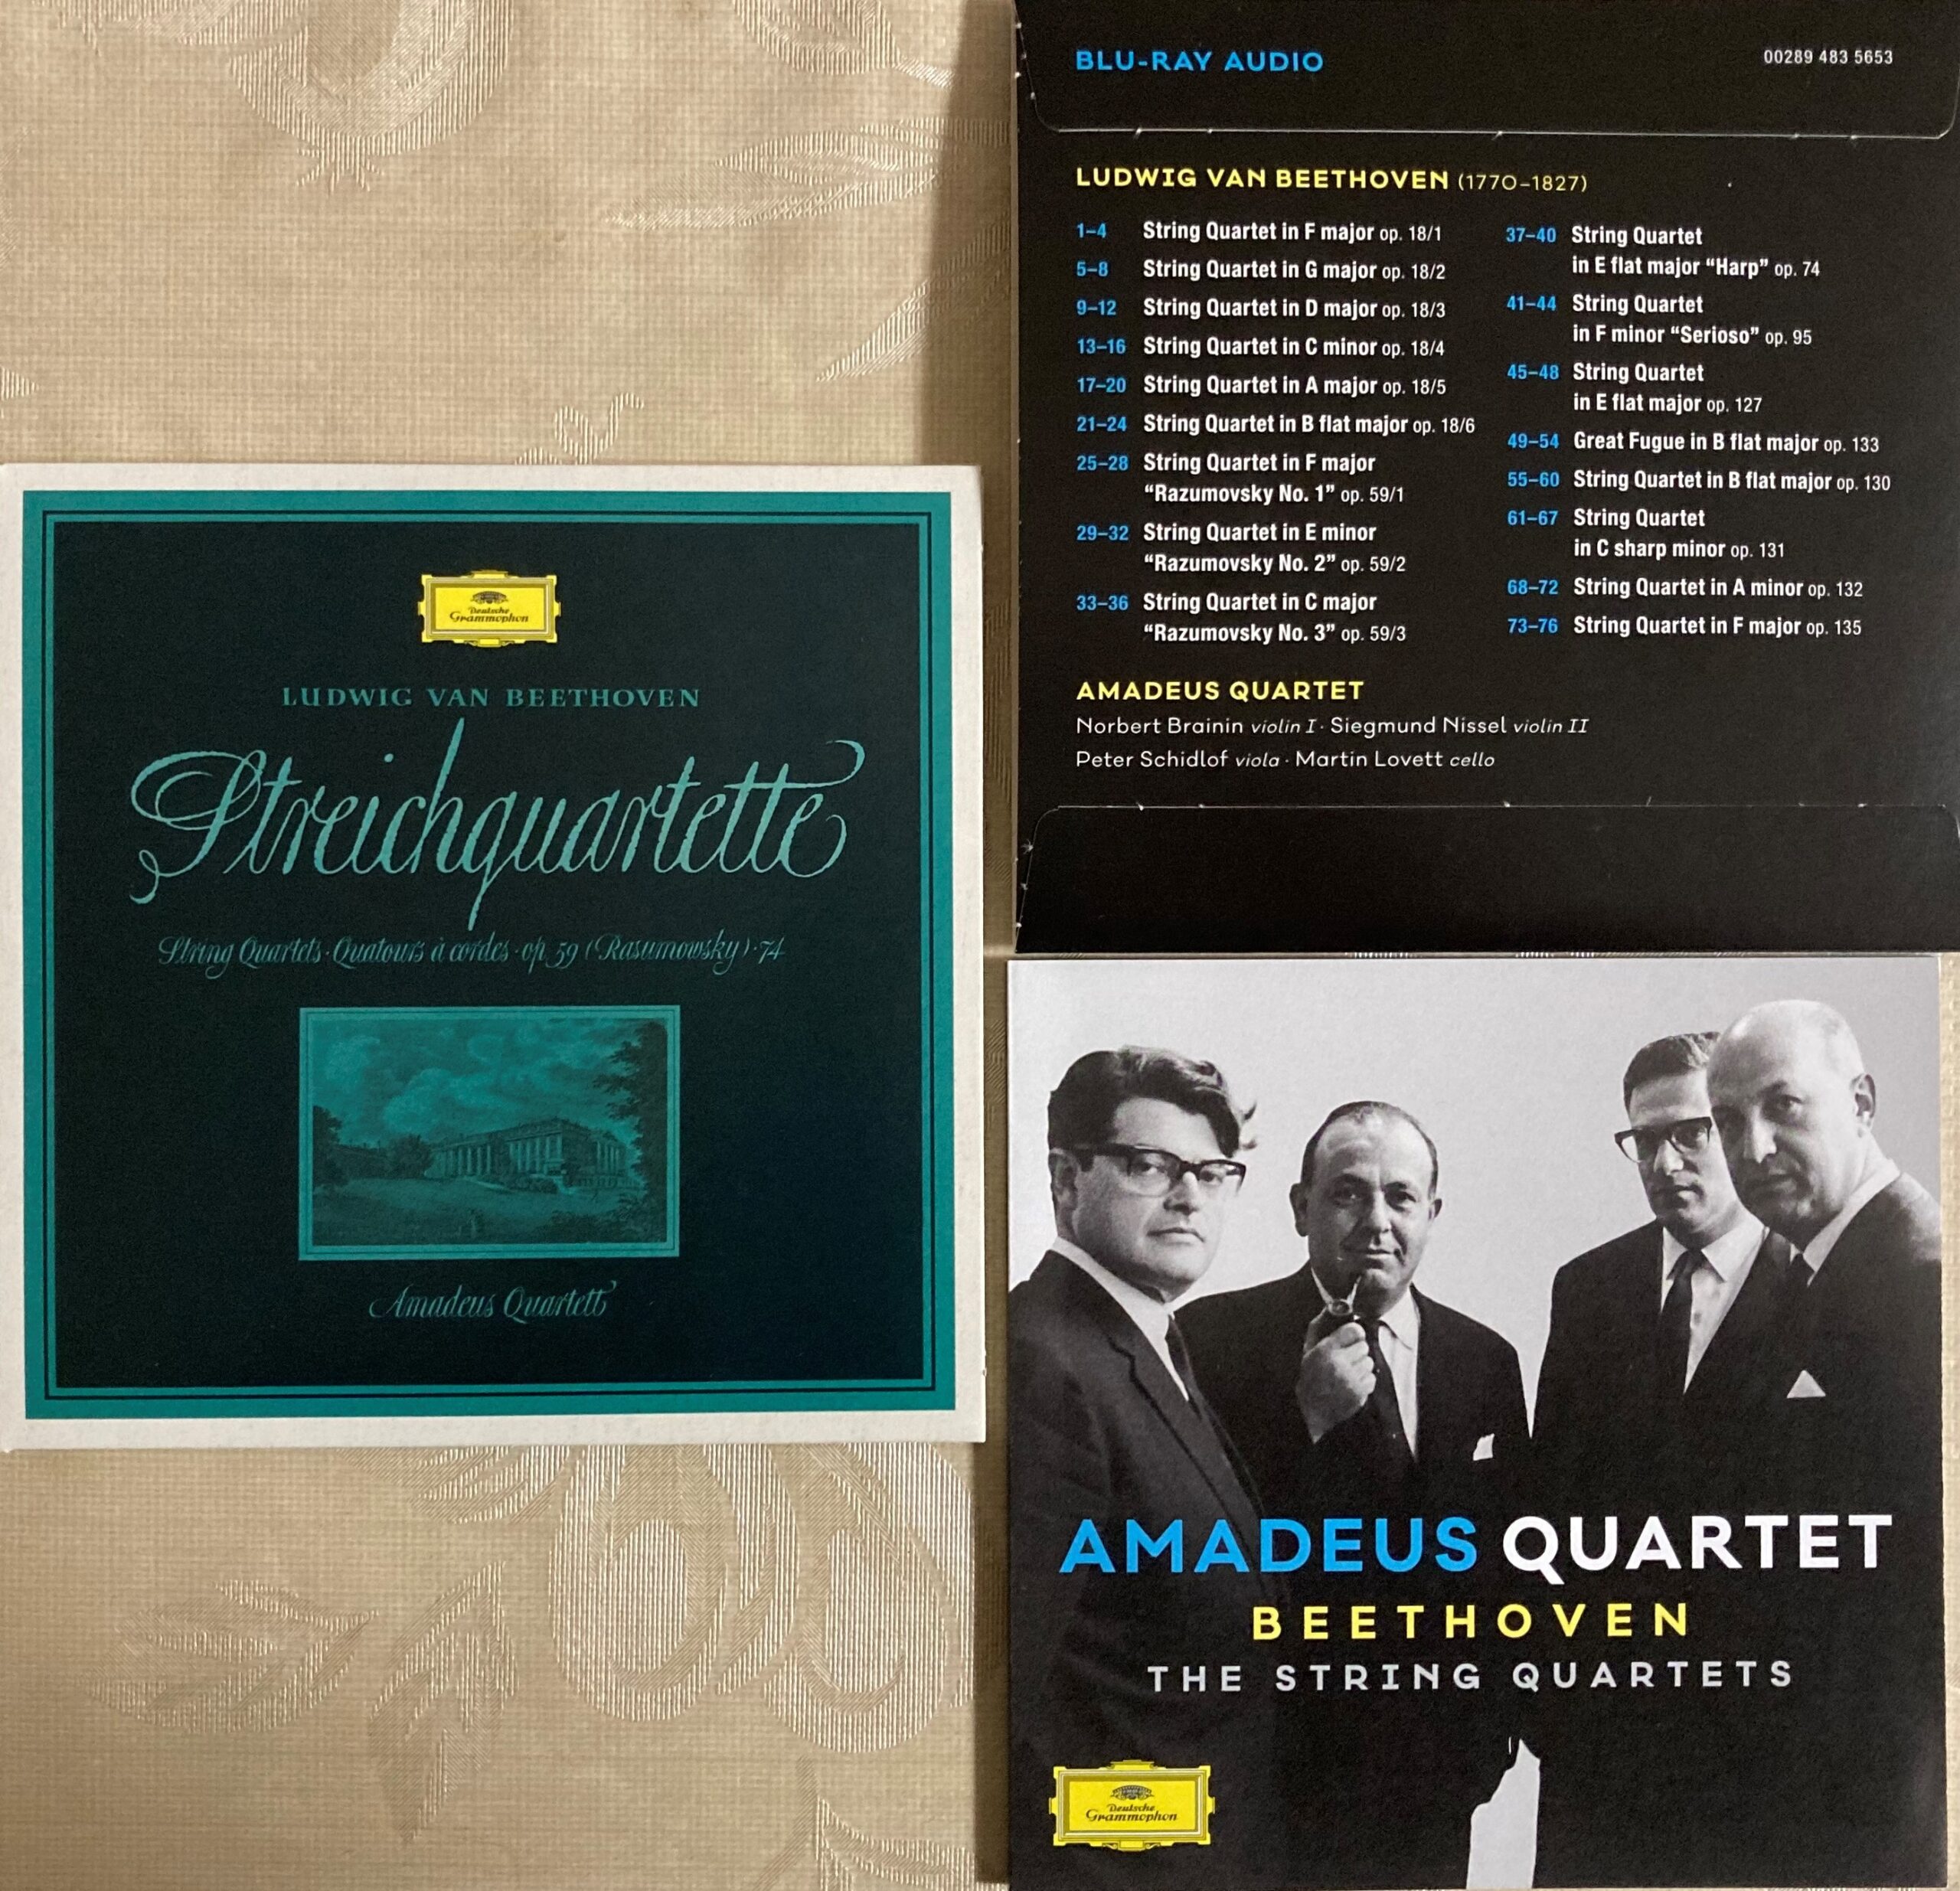 アマデウス弦楽四重奏団のベートーヴェンの弦楽四重奏曲全集の中期のジャケット写真など